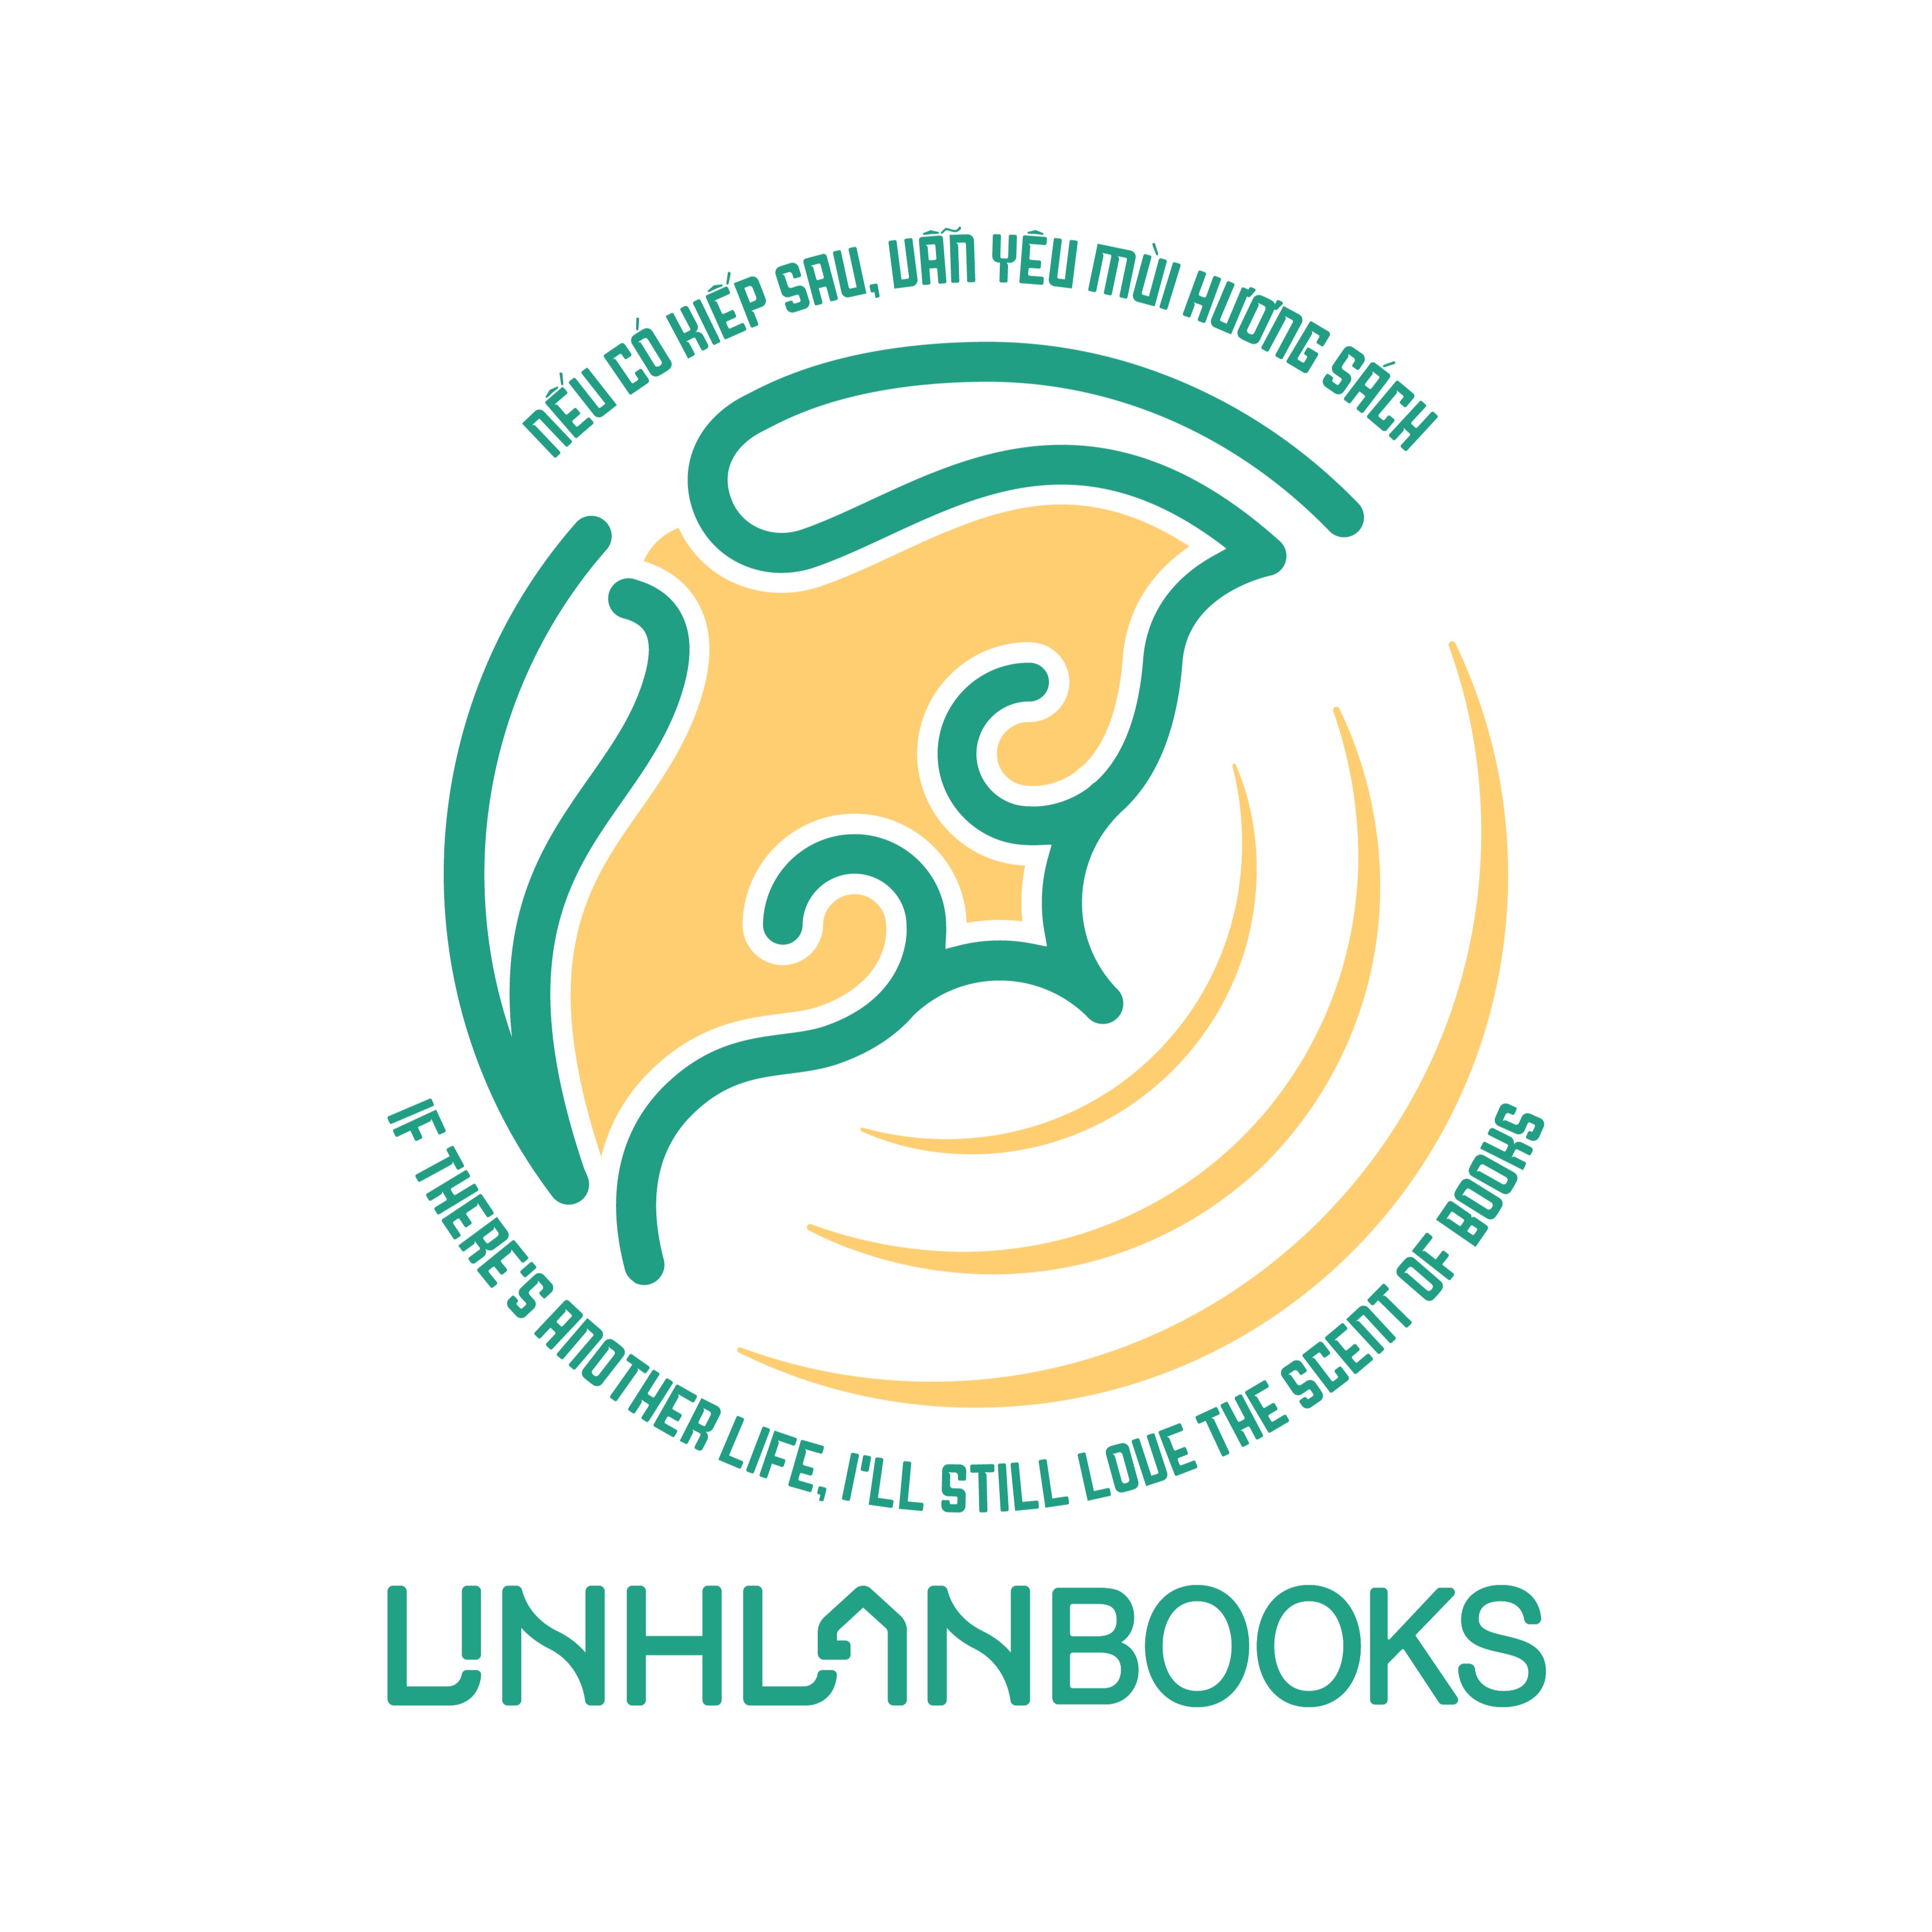 Linh Lan Books